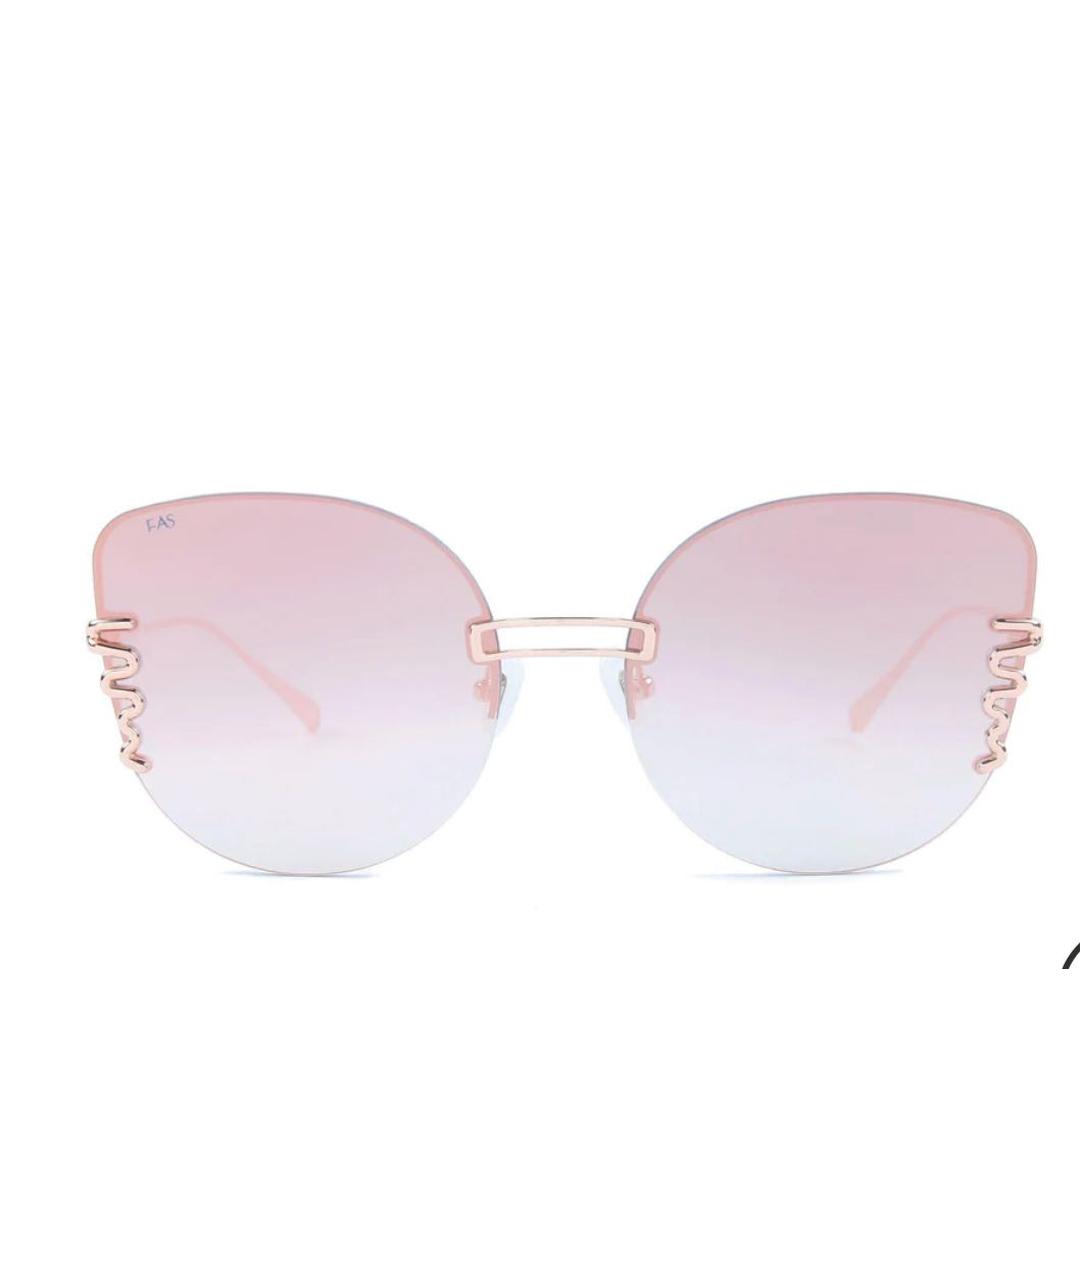 FOR ART'S SAKE Розовые пластиковые солнцезащитные очки, фото 1